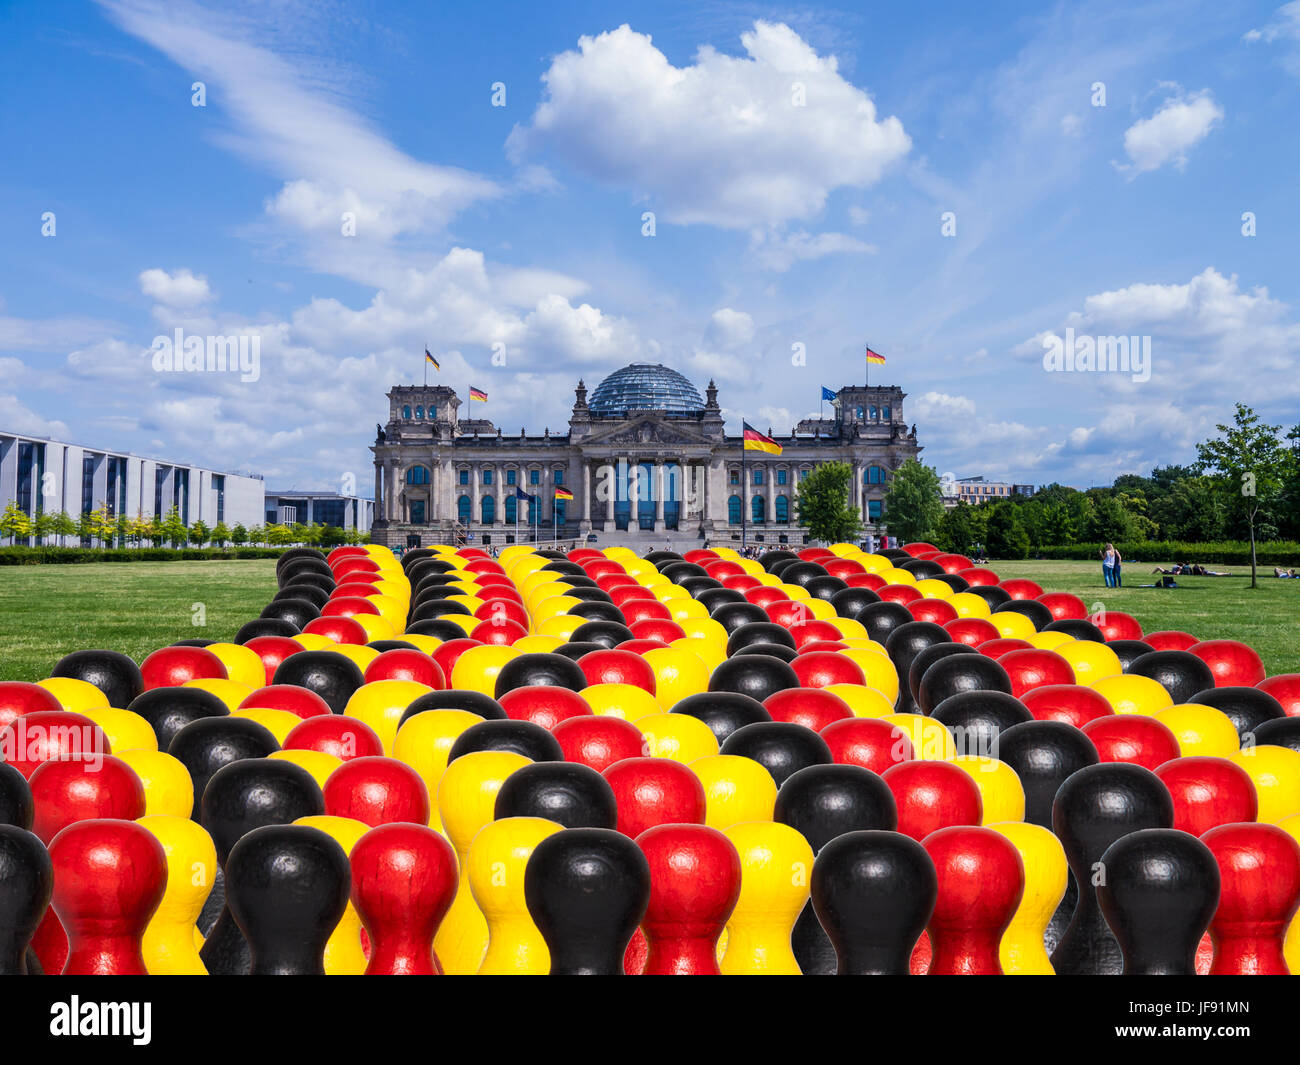 In Germania il parlamento e figure in nero, oro rosso Foto Stock